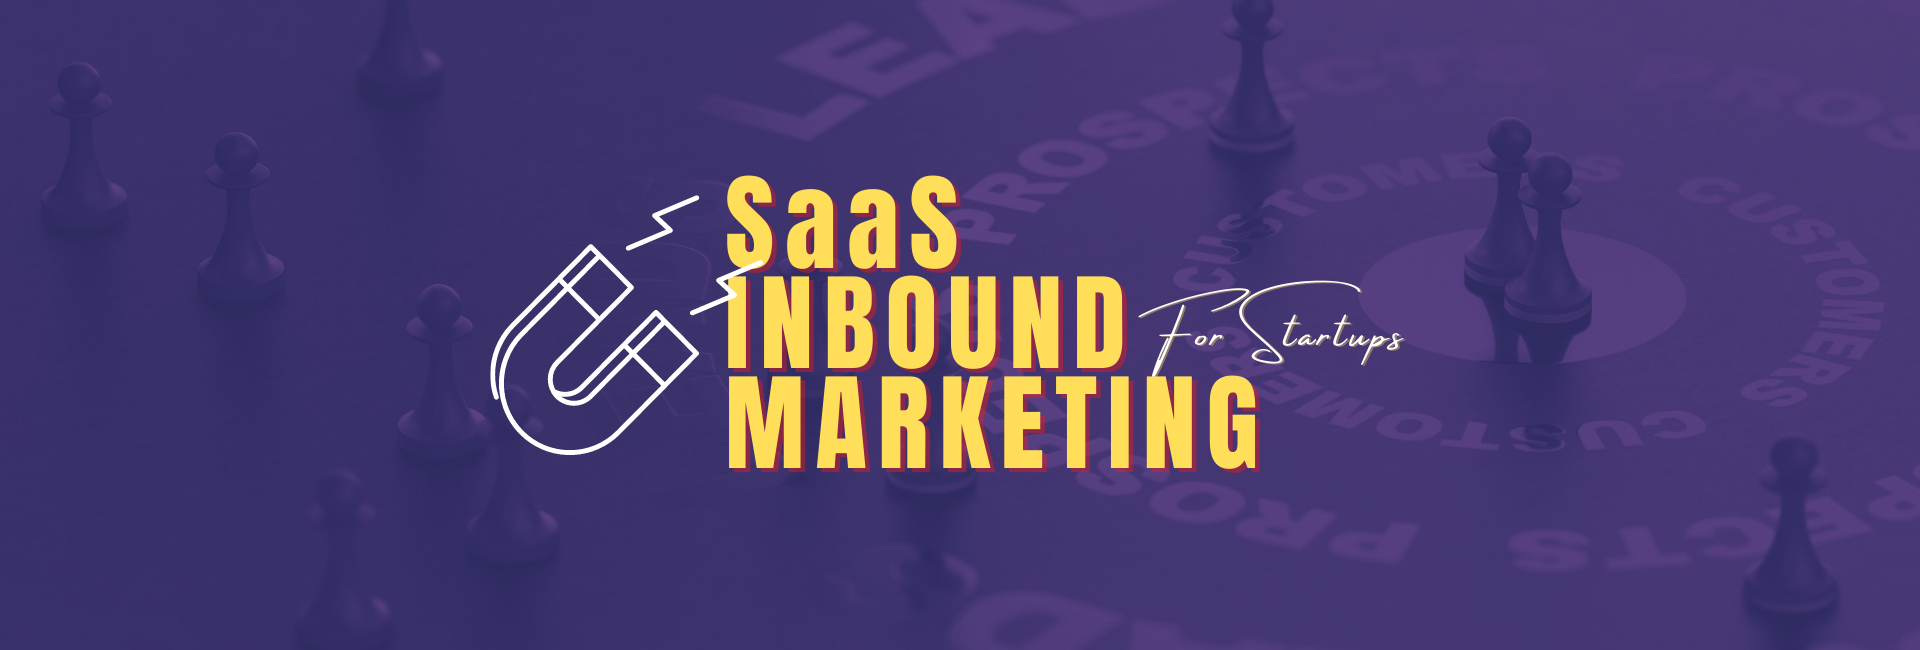 SaaS Inbound Marketing for Startups